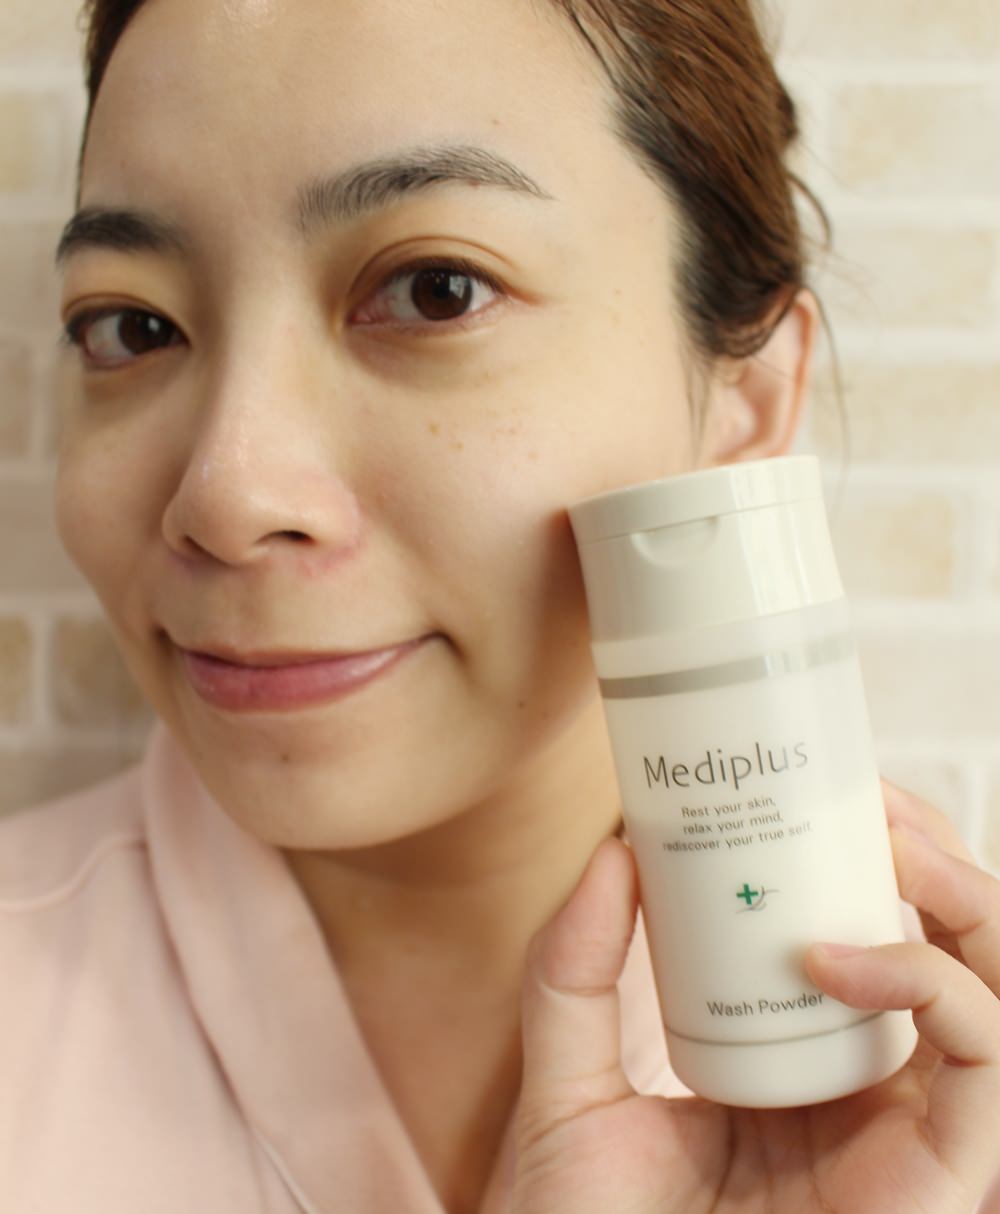 【保養】Mediplus美樂思酵素洗顏粉~讓人嘖嘖稱奇的棉花糖泡泡&還妳乾淨光滑的亮白臉龐